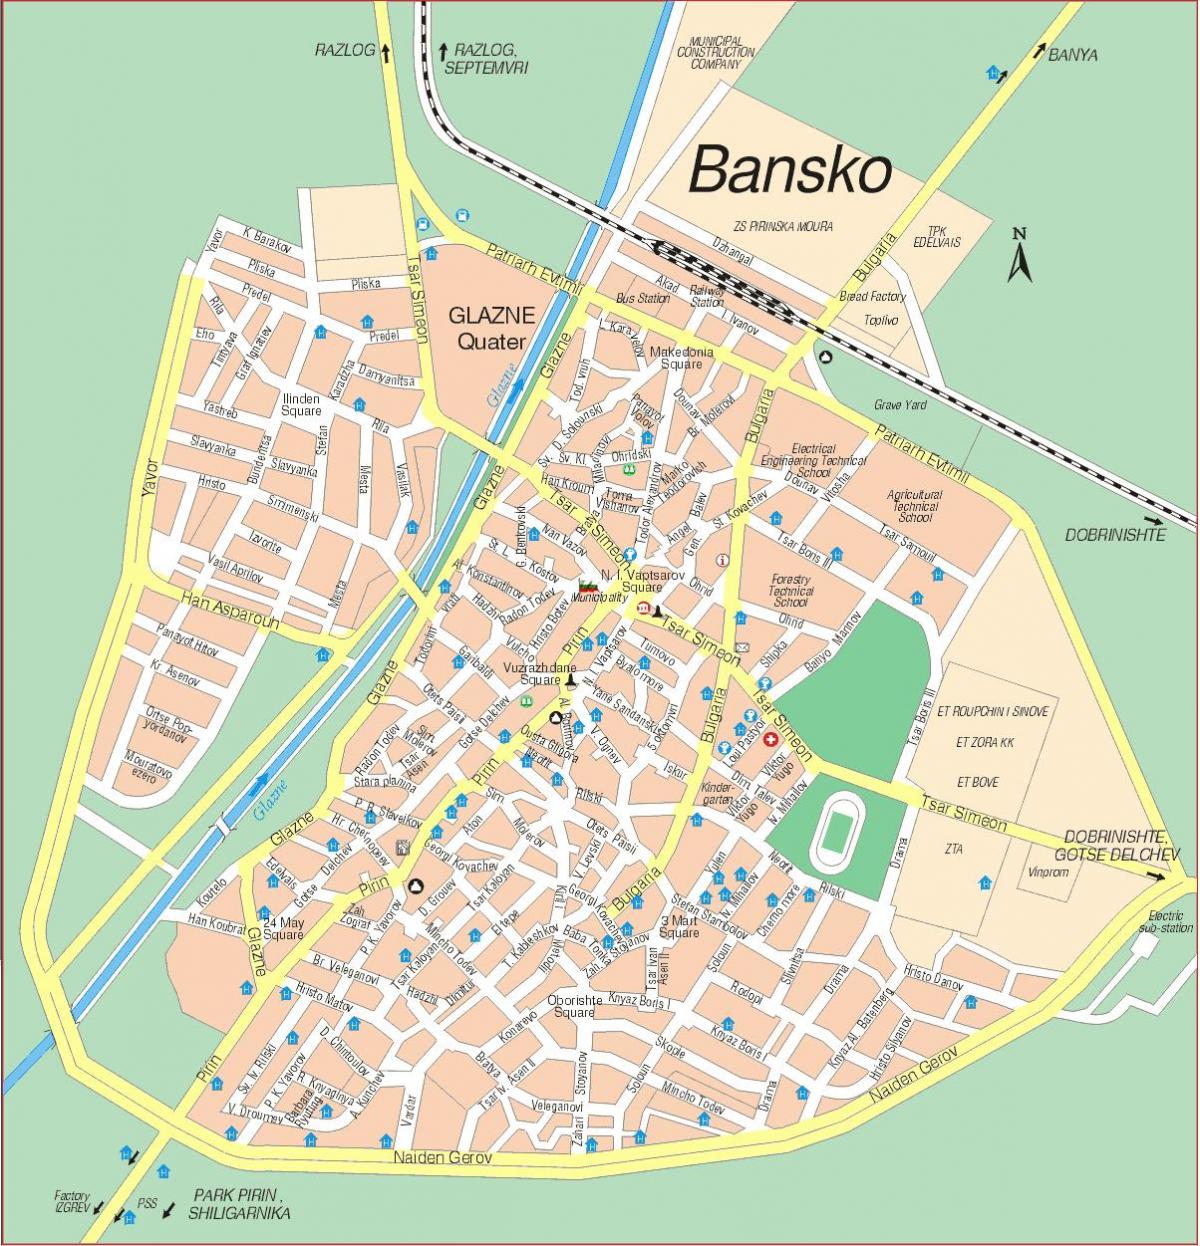 Bansko, bulgária mapa